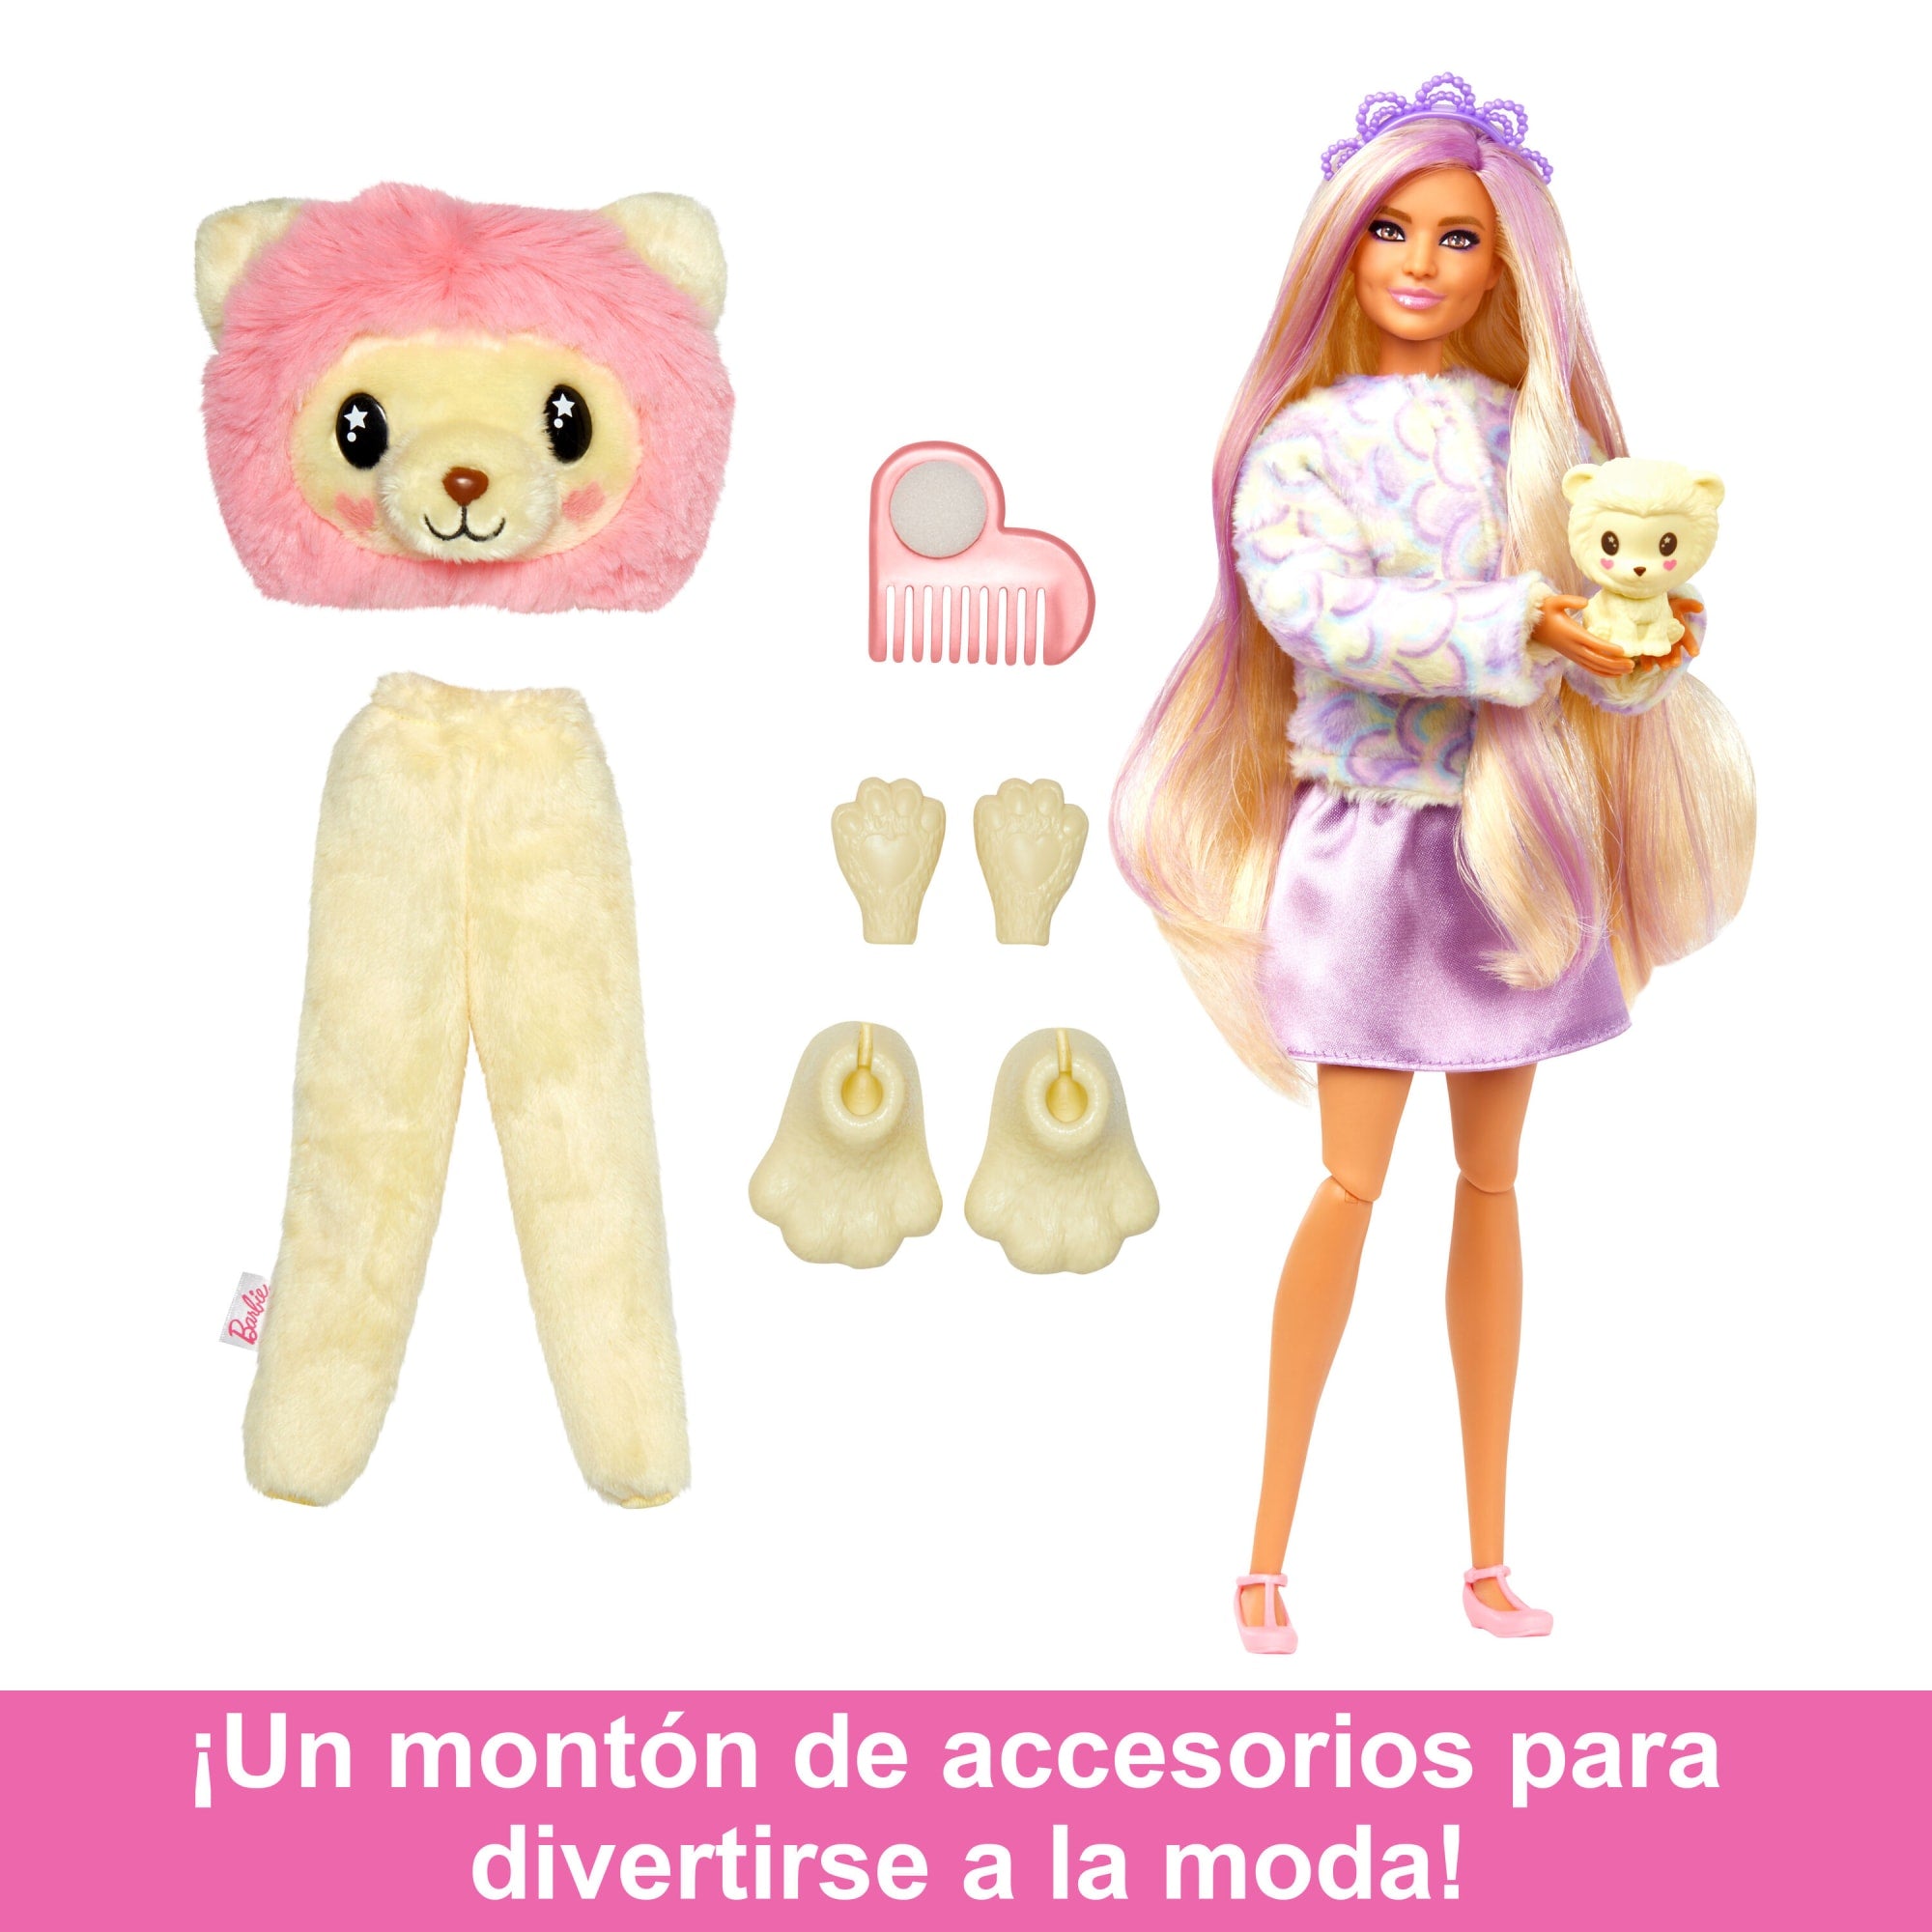 Muñeca Original de la serie Barbie Cutie Reveal Fantasy, disfraz